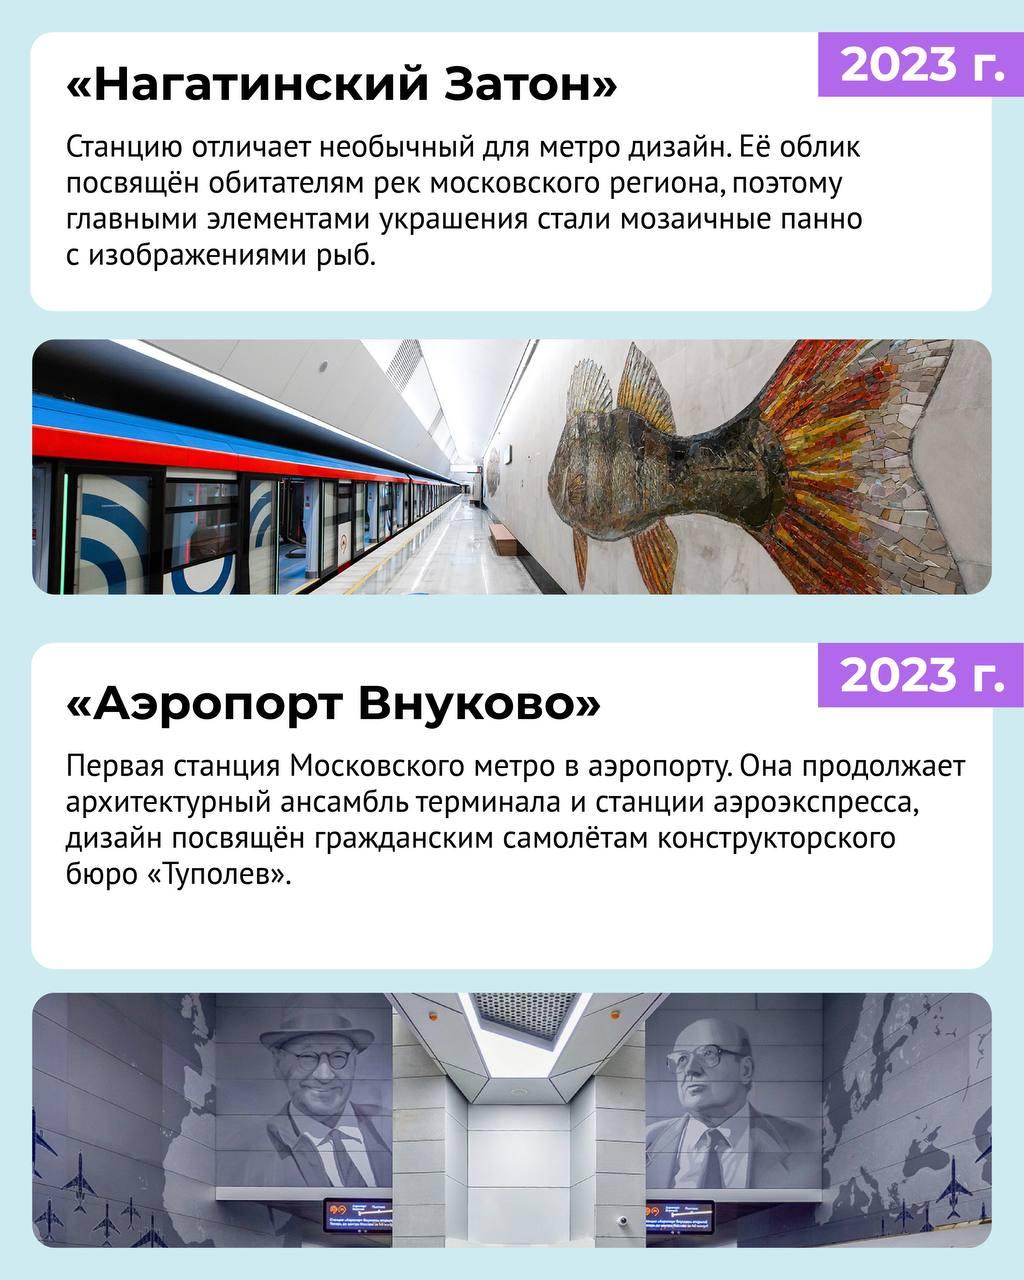 Самые красивые новые станции метро в Москве